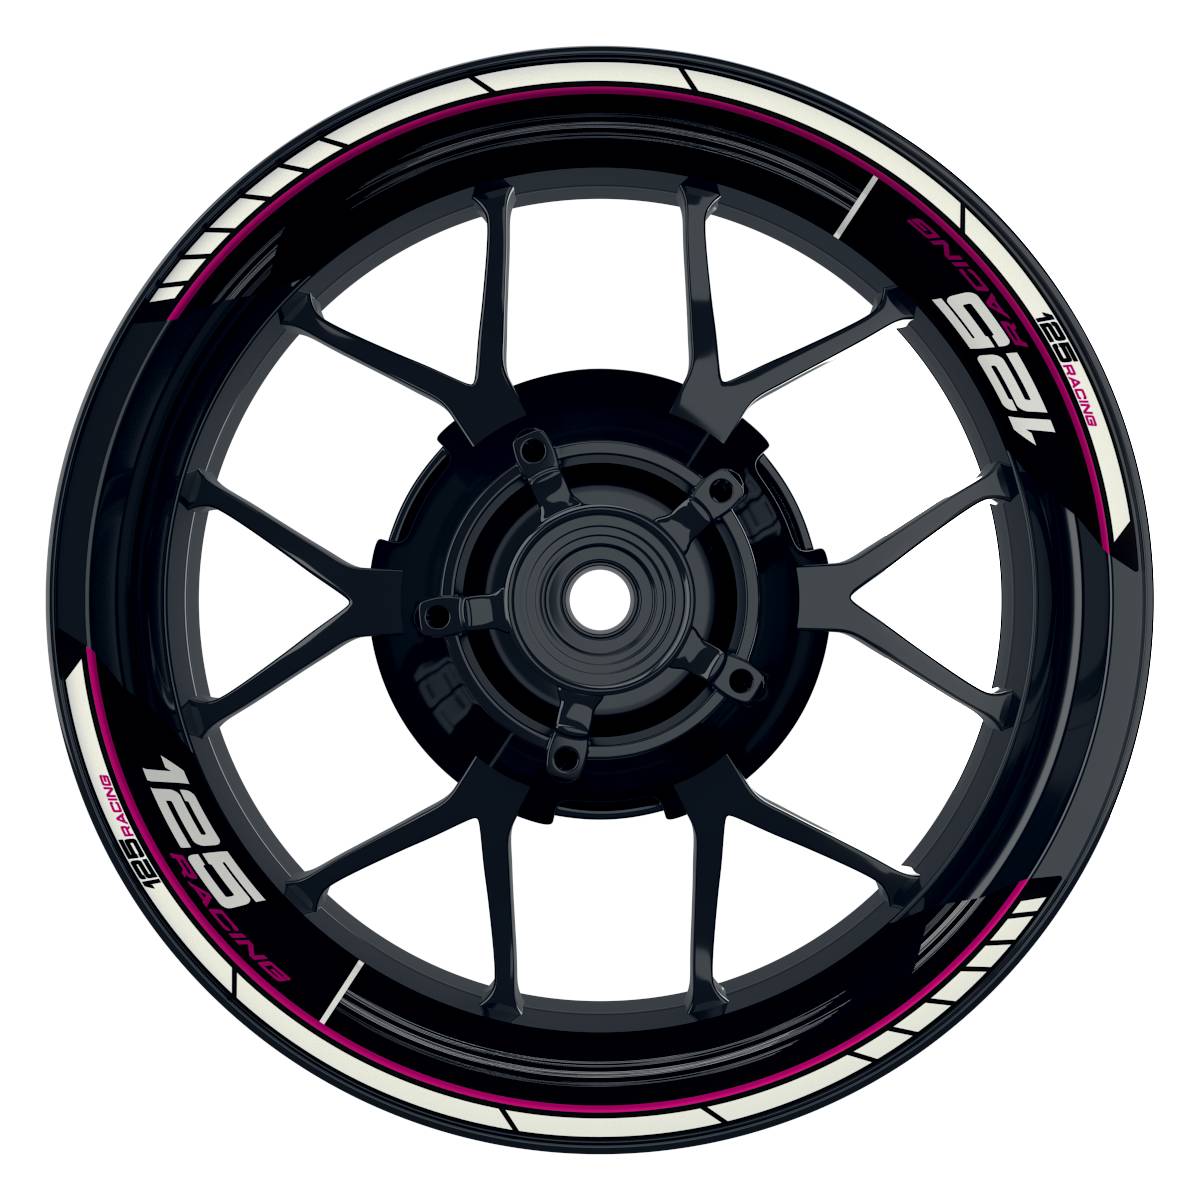 KTM Racing 125 Scratched schwarz pink Frontansicht